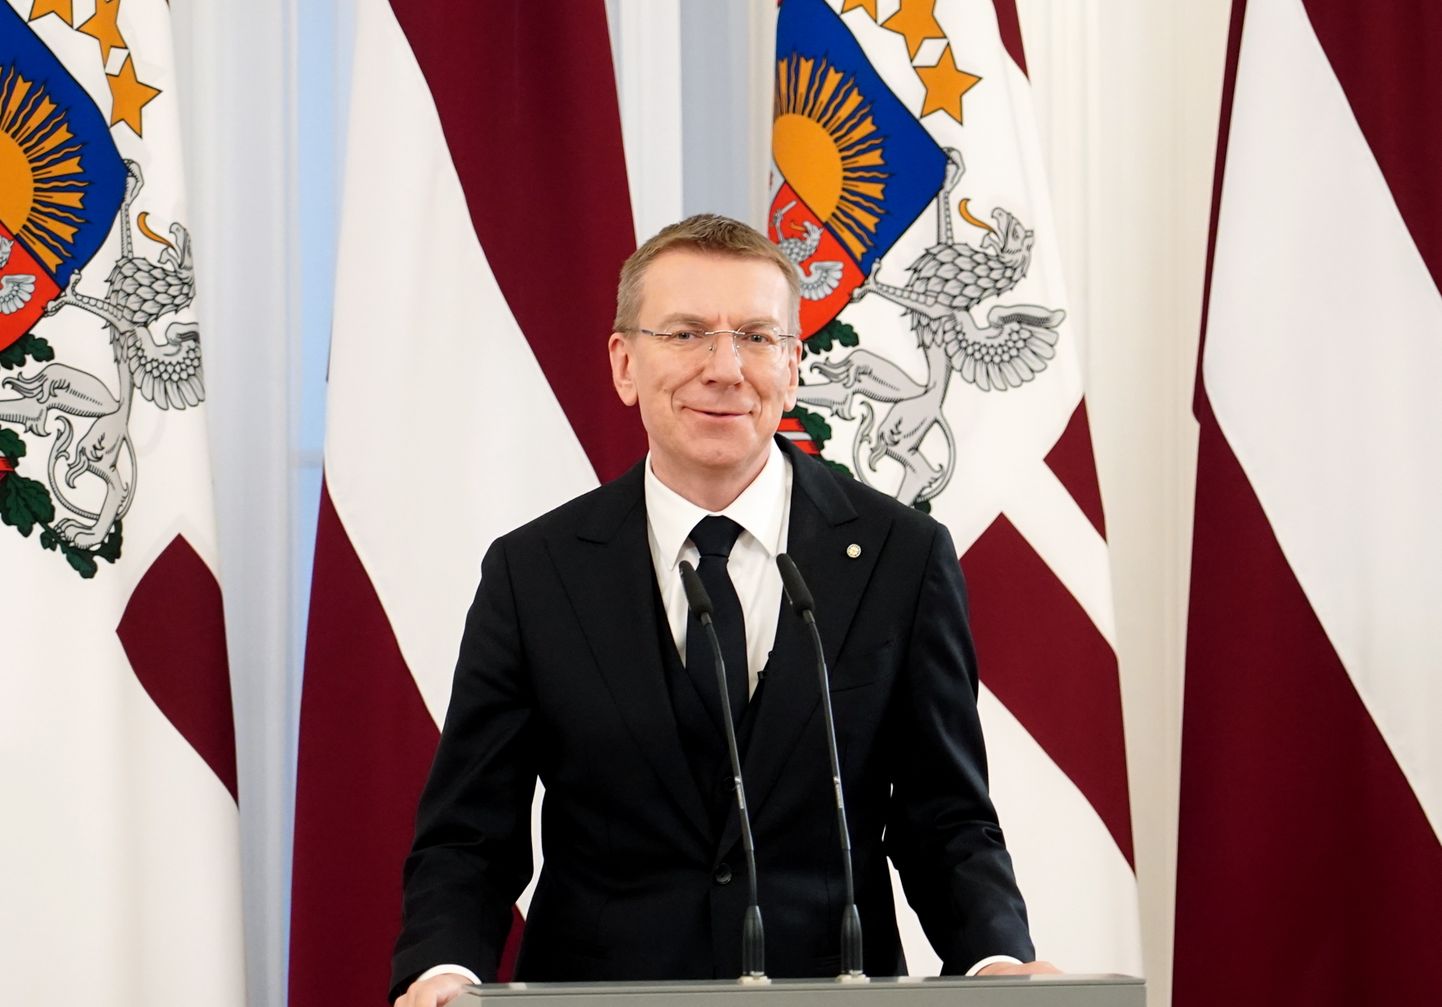 Valsts prezidents Edgars Rinkēvičs piedalās svinīgajā Triju Zvaigžņu ordeņu pasniegšanas ceremonijā Latvijas valsts proklamēšanas 105. gadadienā Rīgas pilī.